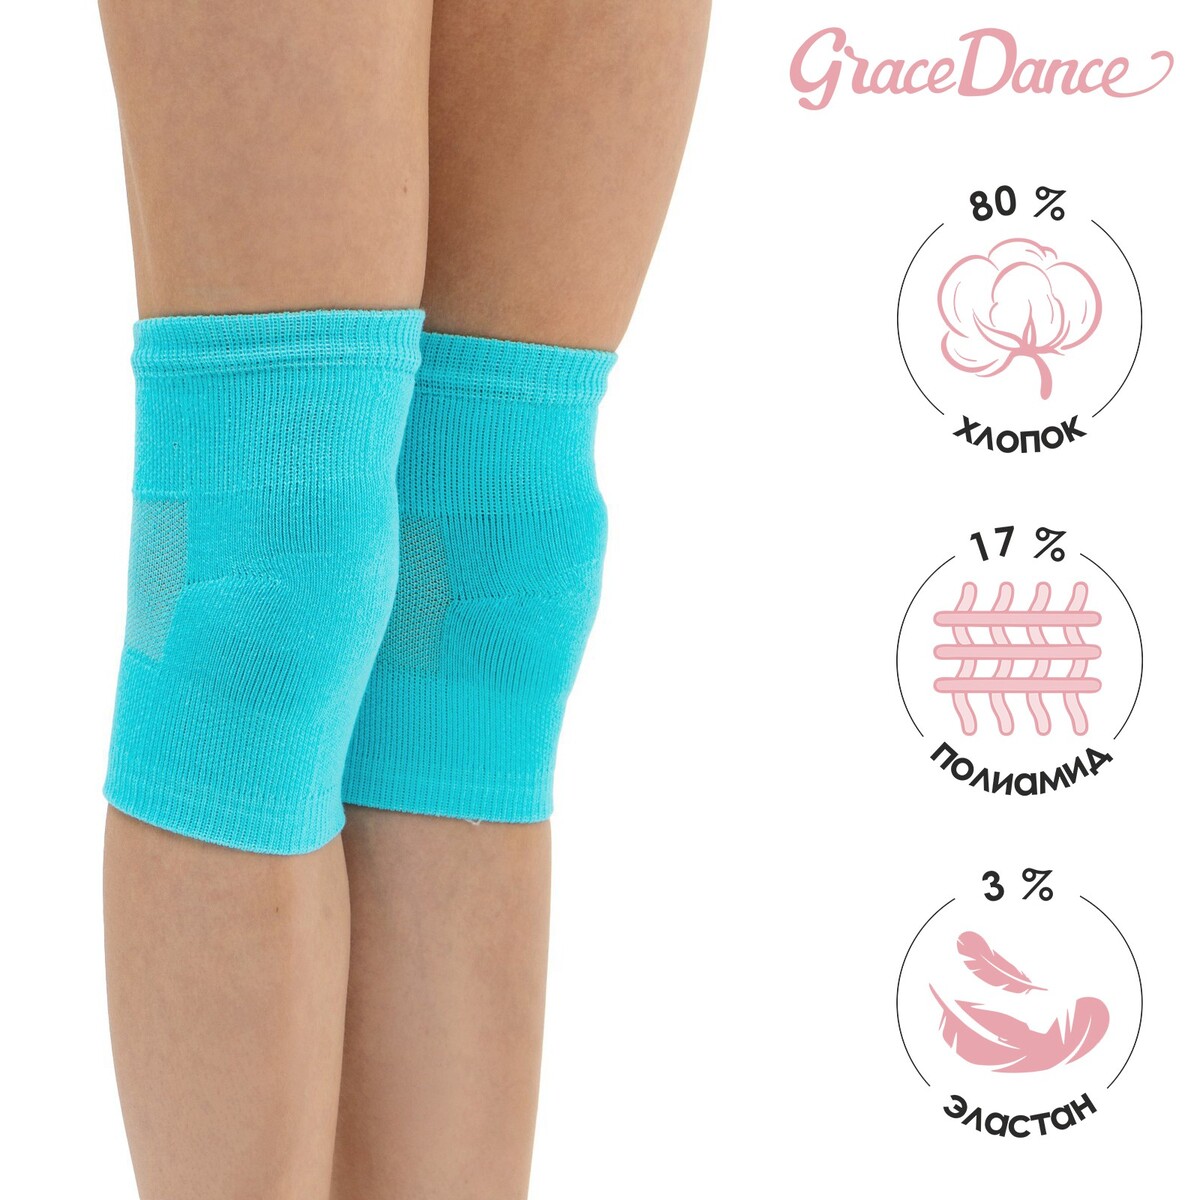 Наколенники для гимнастики и танцев grace dance №2, р. m, цвет бирюзовый Grace Dance